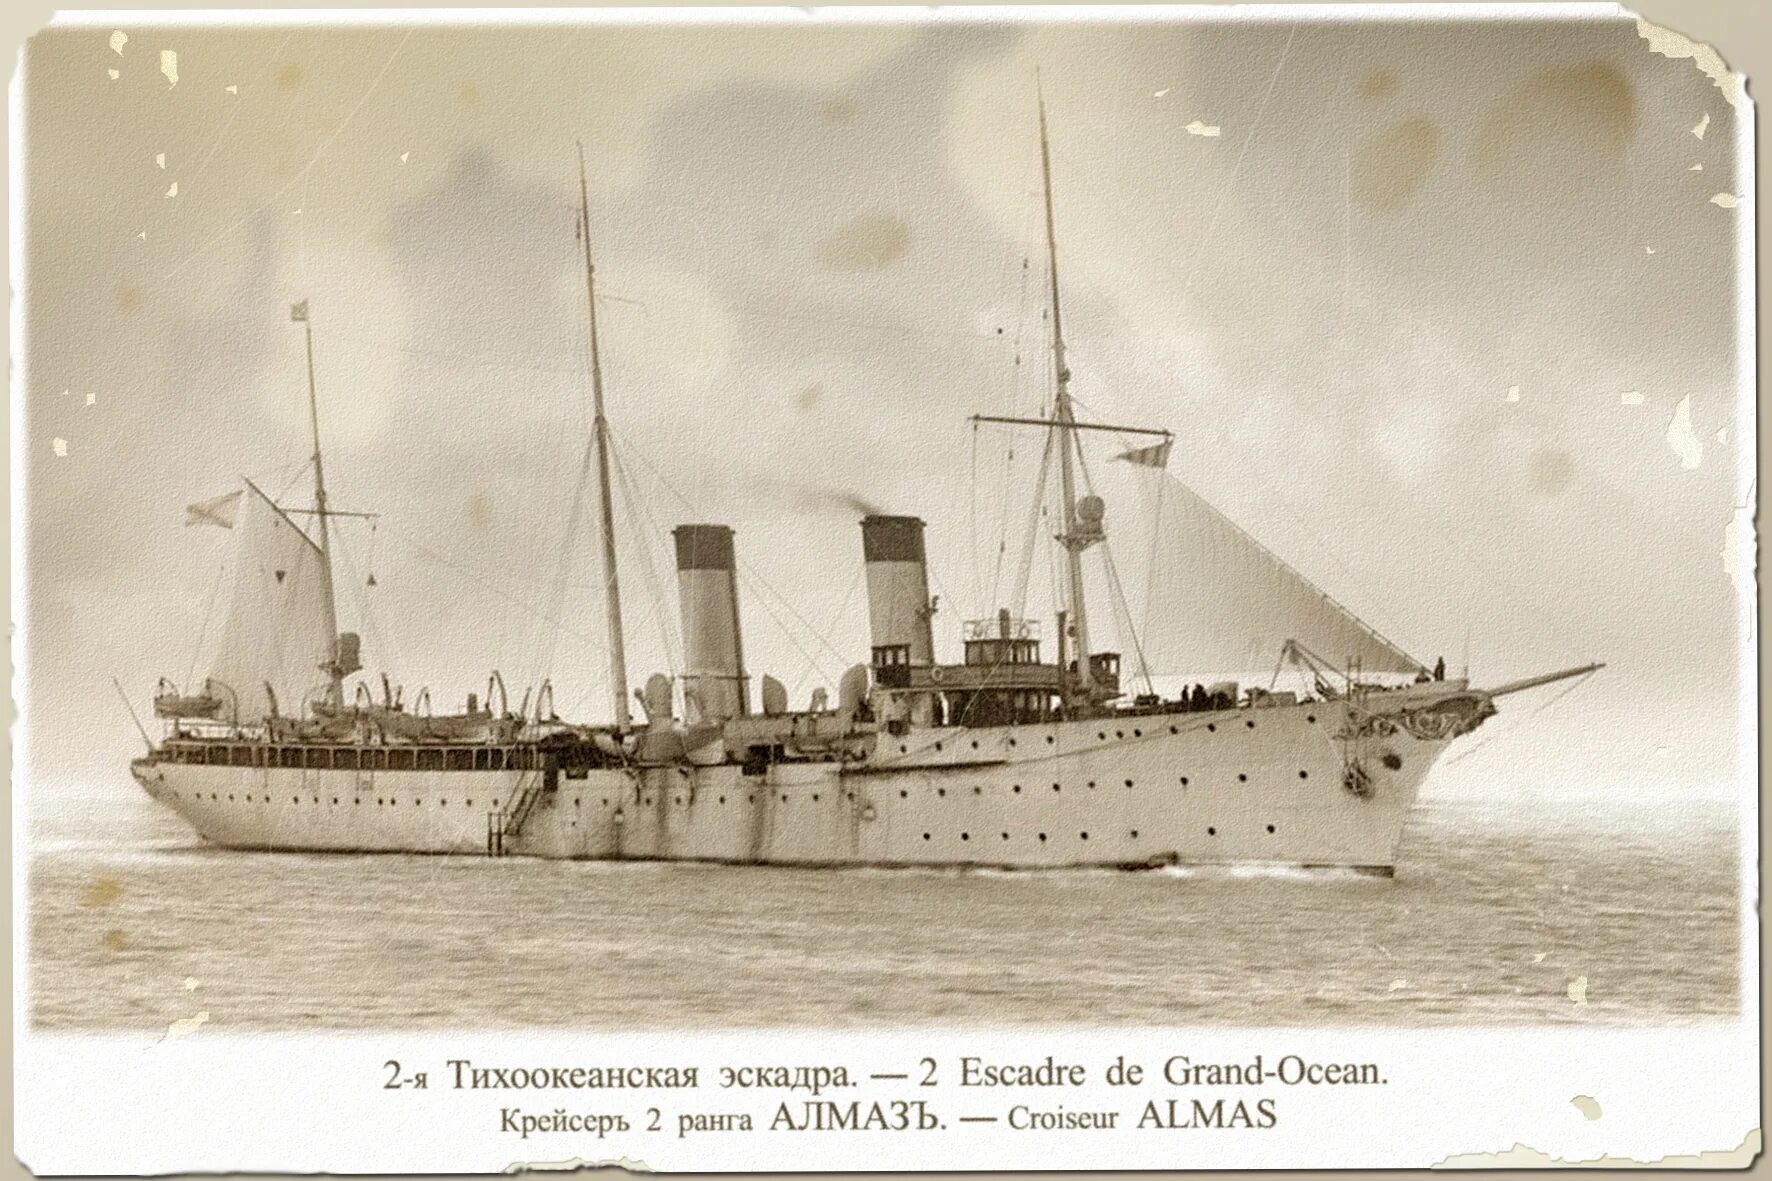 Балтийского моря эскадру получившую название тихоокеанской эскадры. Тихоокеанская эскадра 1904. 2-Я Тихоокеанская эскадра 1904.